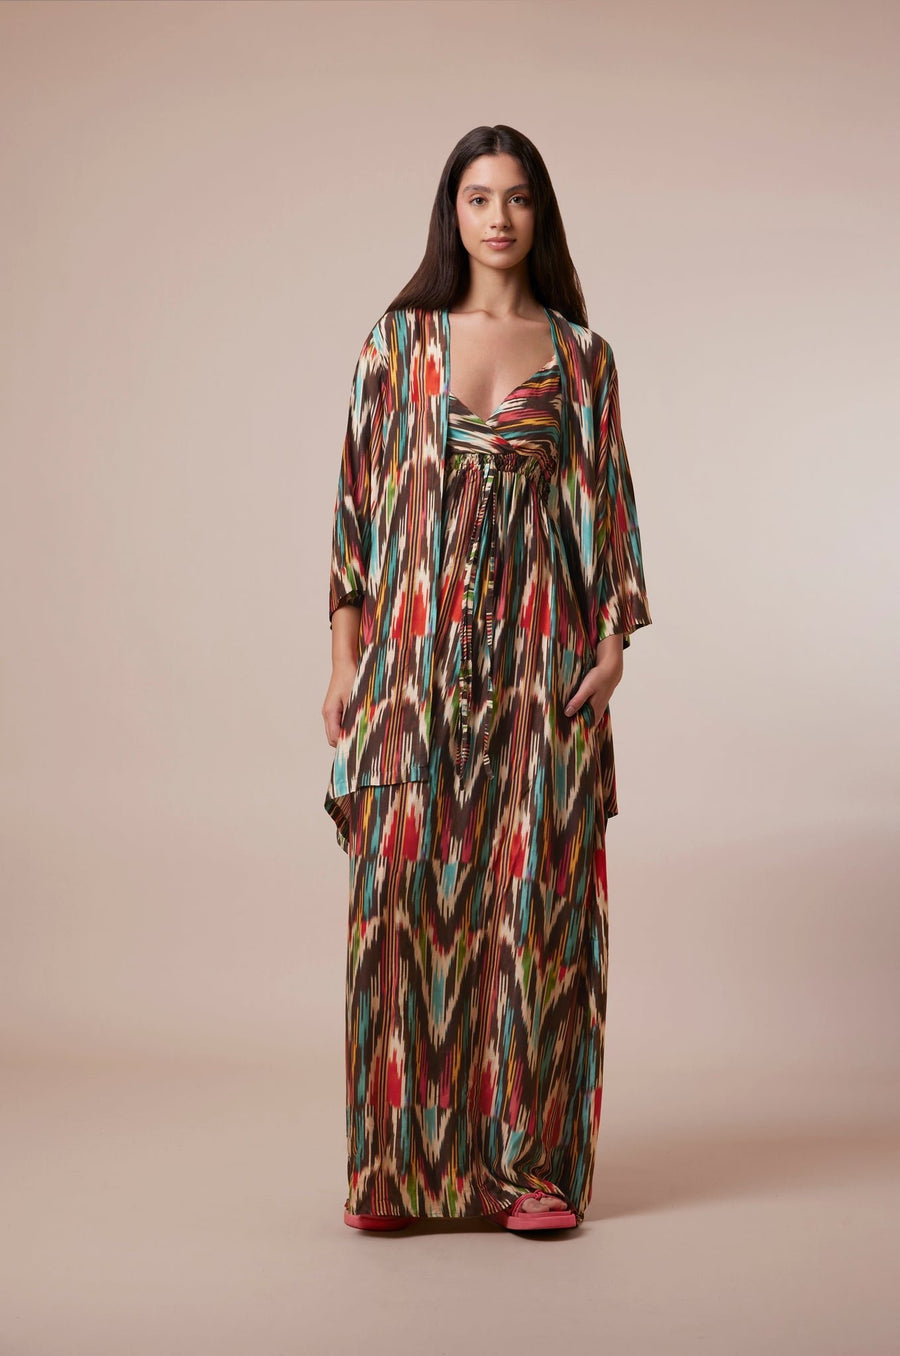 Pink & Brown multi print Dress - nahlaelalfydesigns